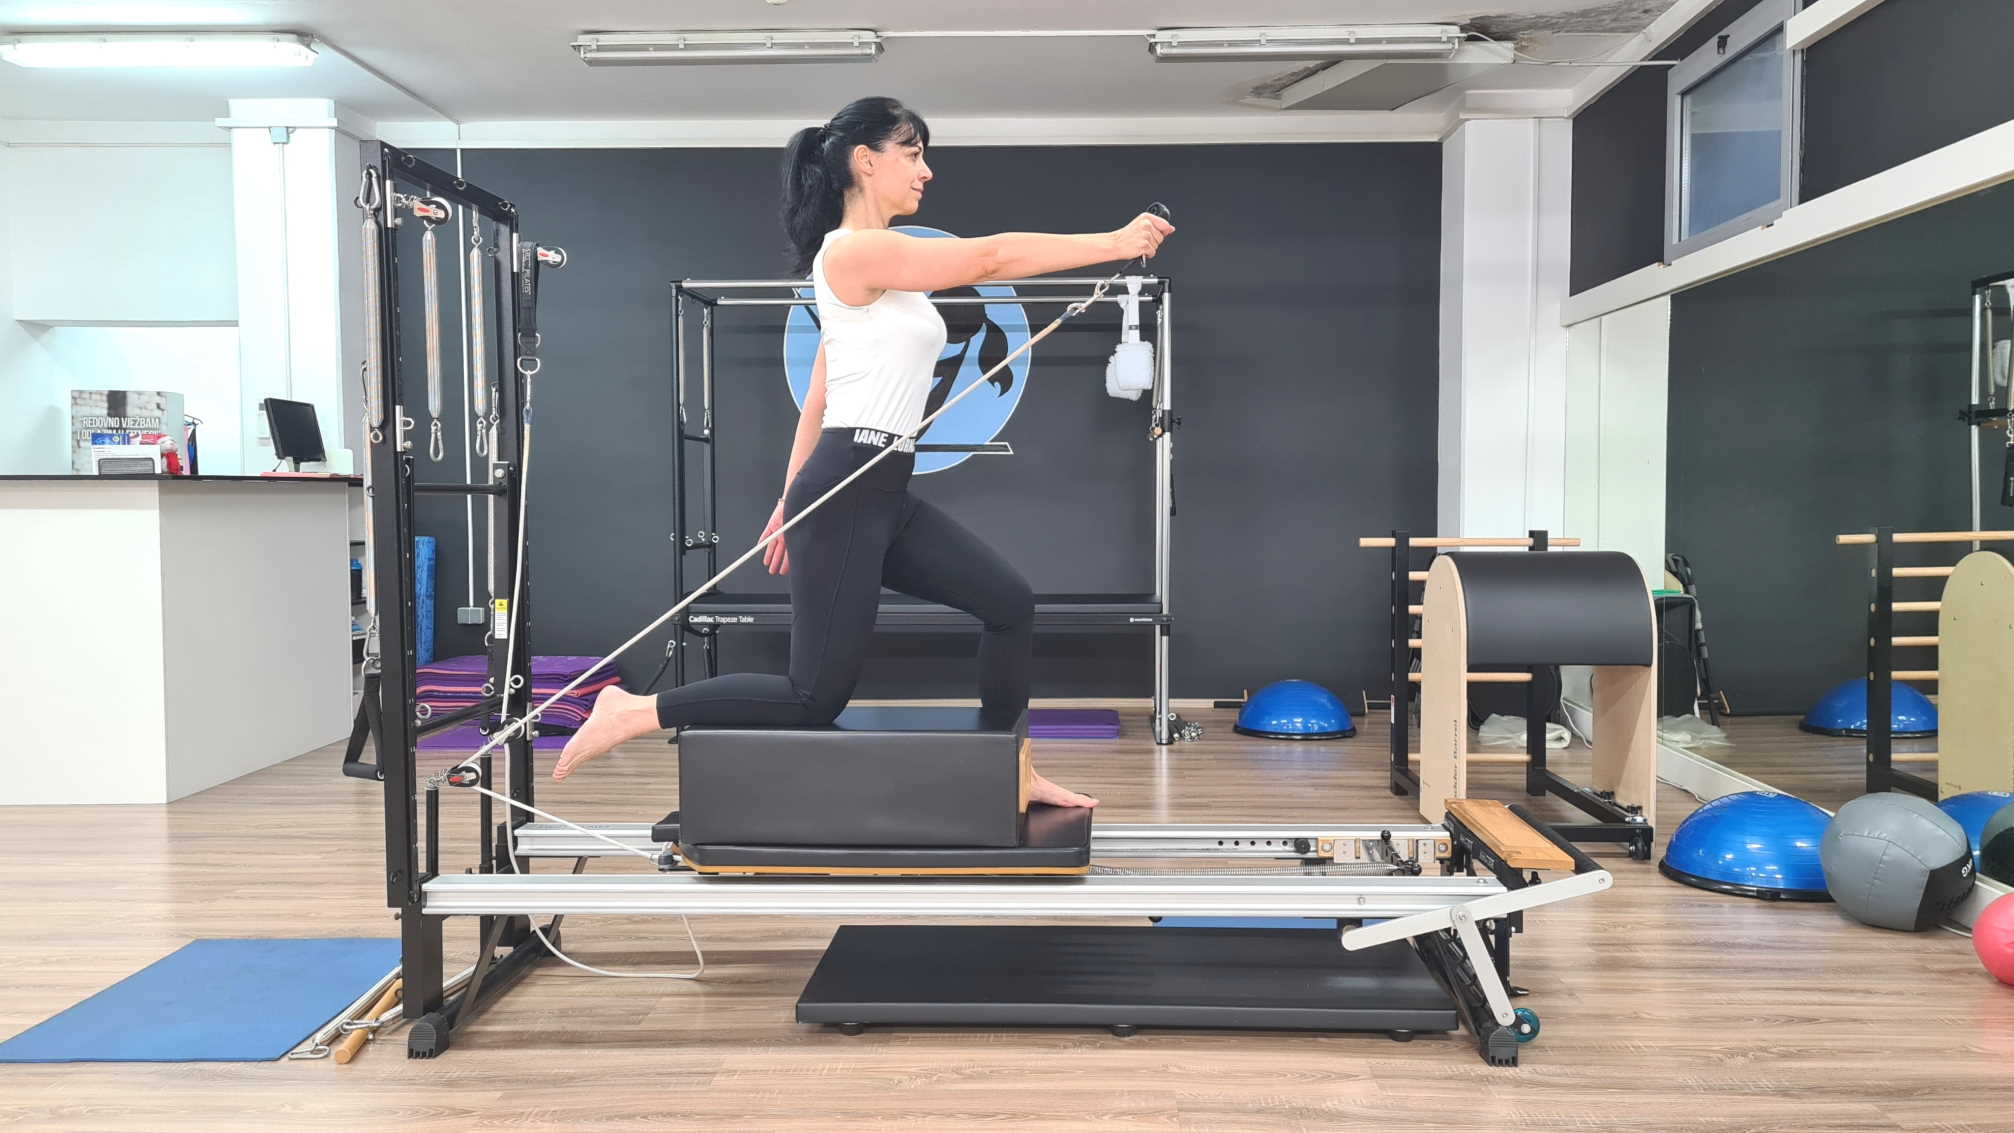 Pilatesom do zdravlja: pilates metoda vježbanja za zdravlje kralježnice